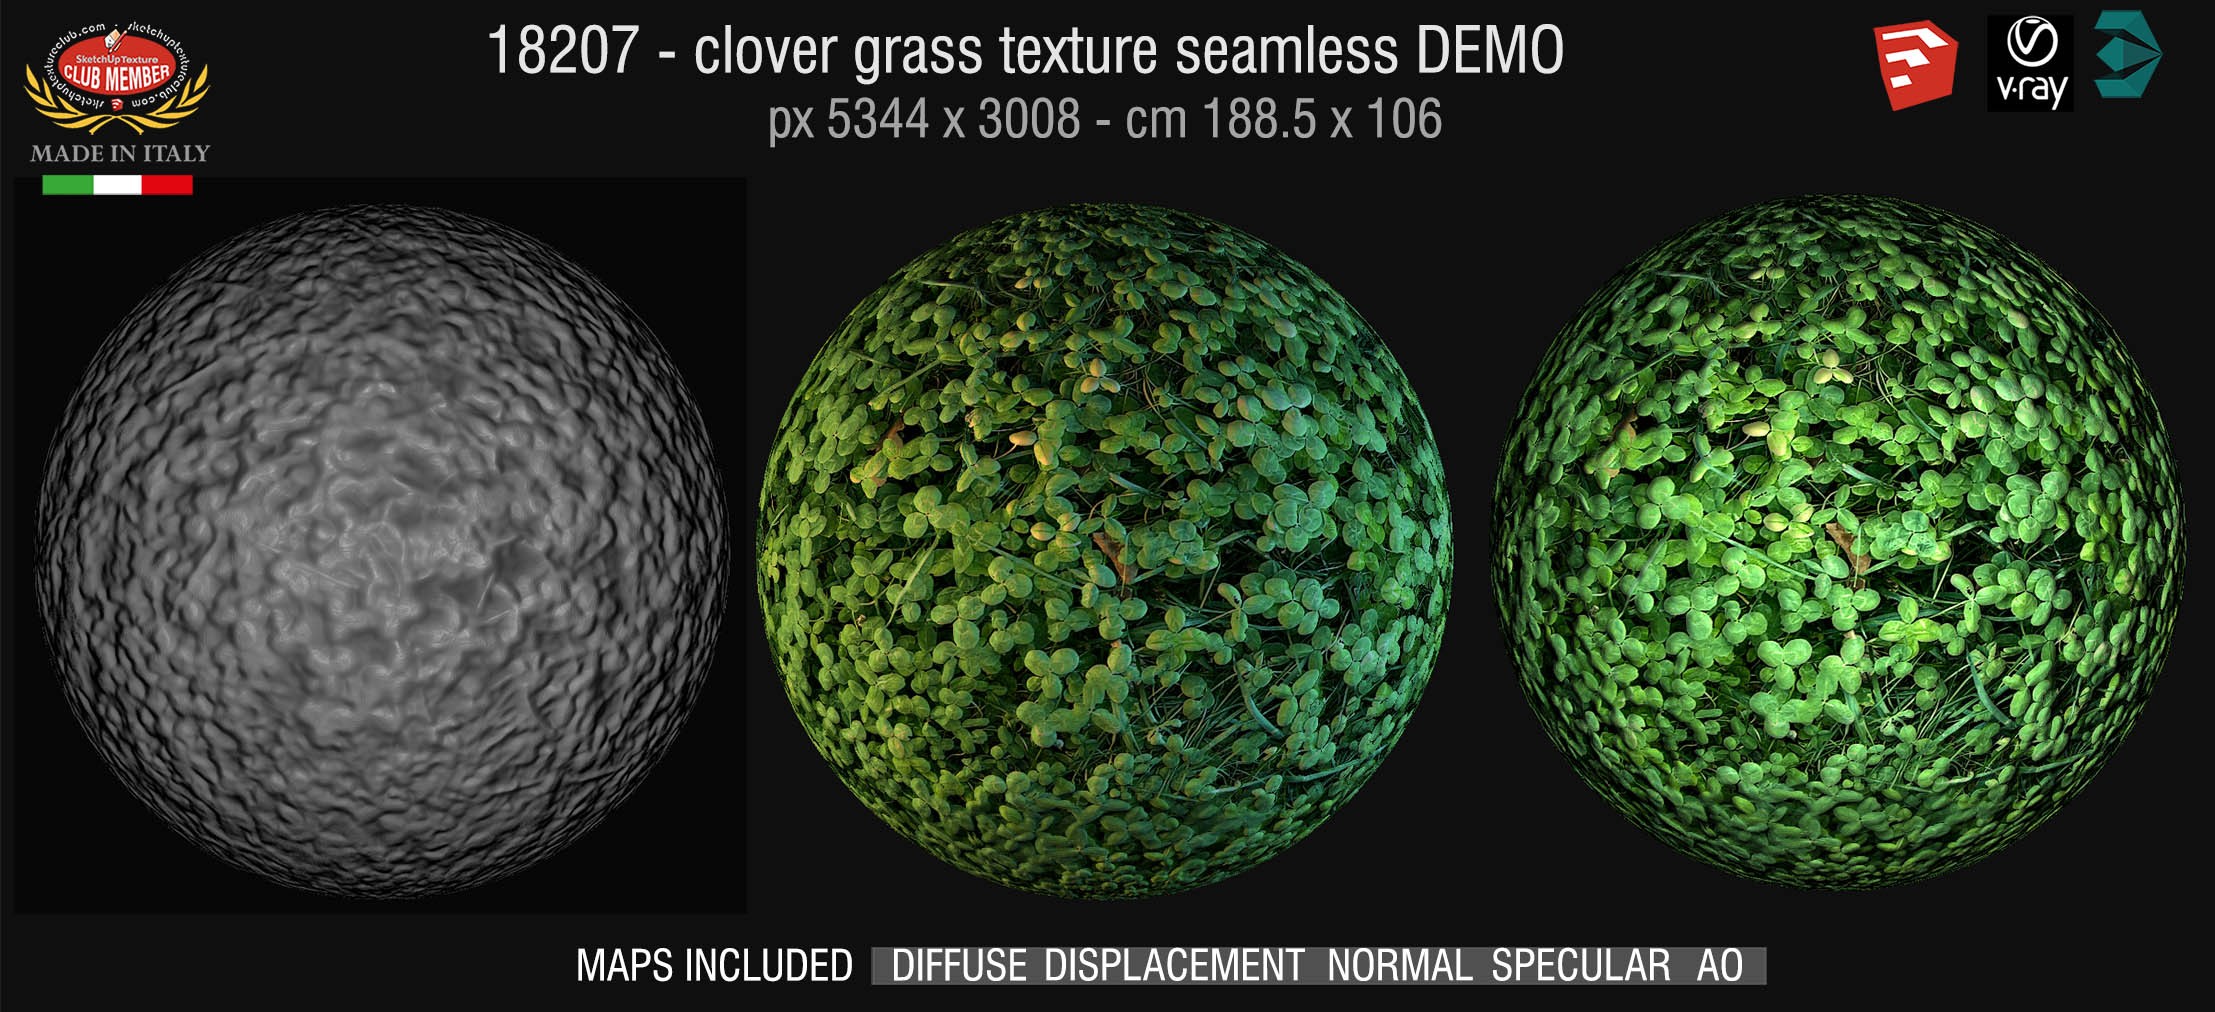 18207 HR Clover grass texture + maps DEMO